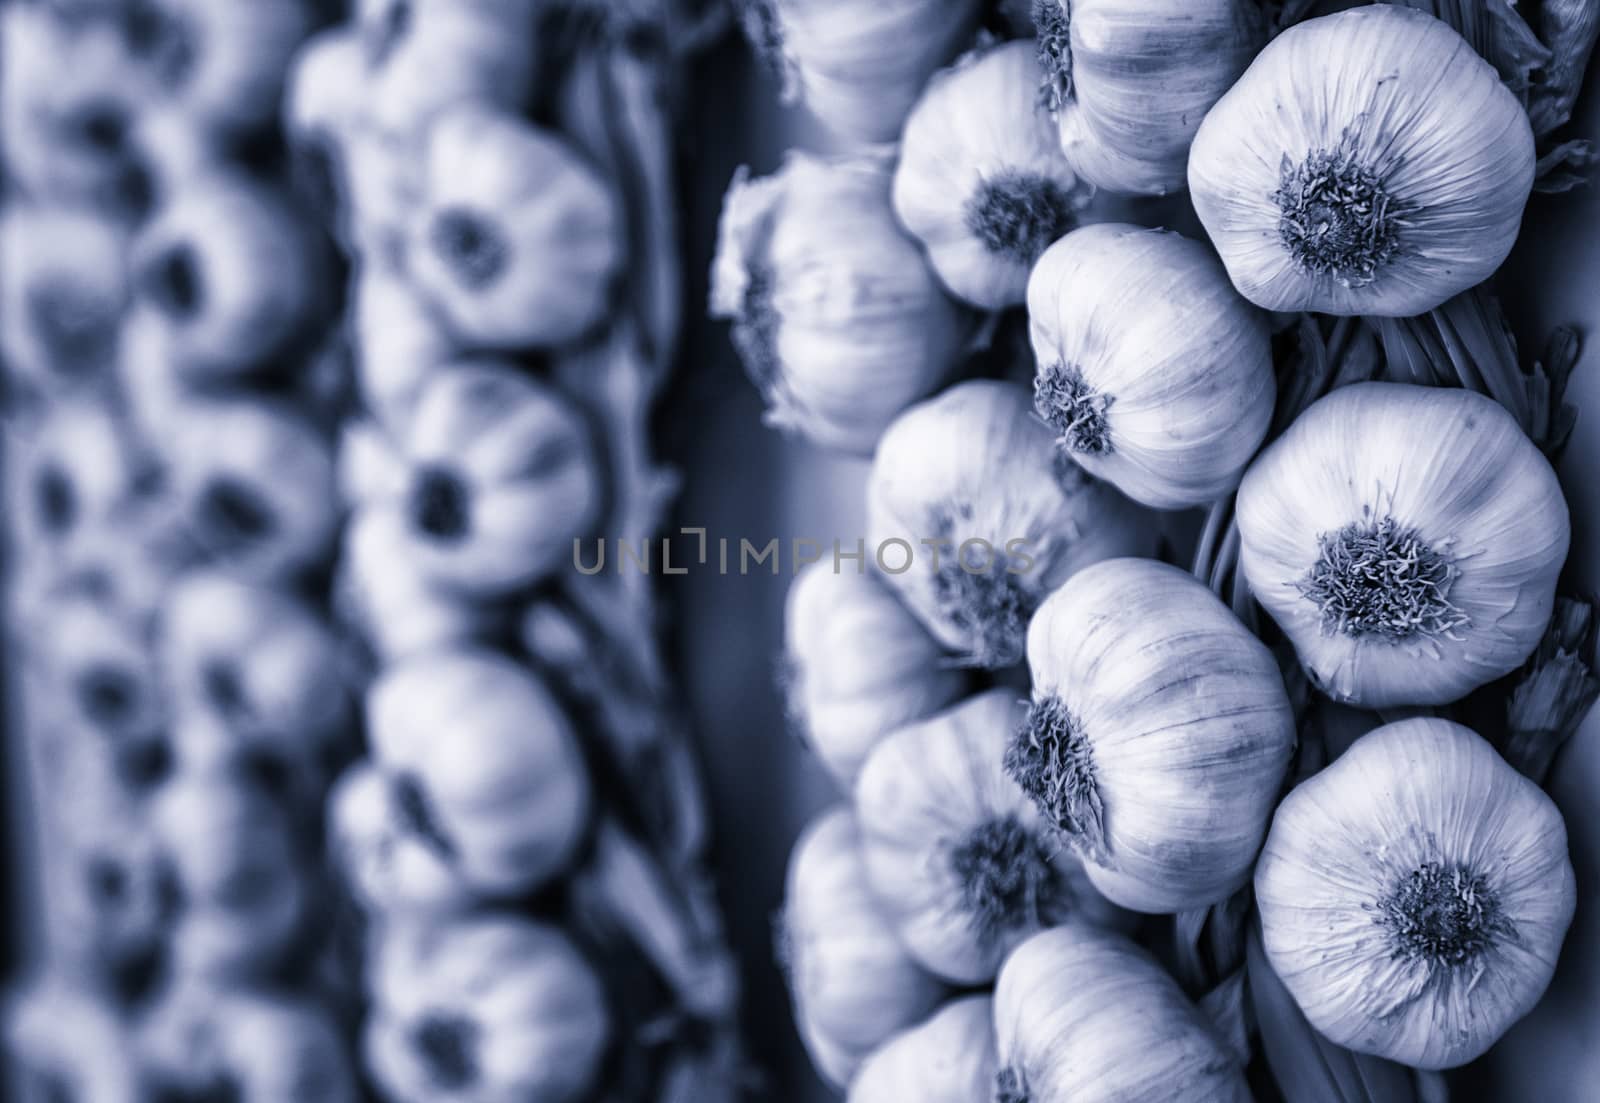 Harvest of garlic in a market, ingredient detail